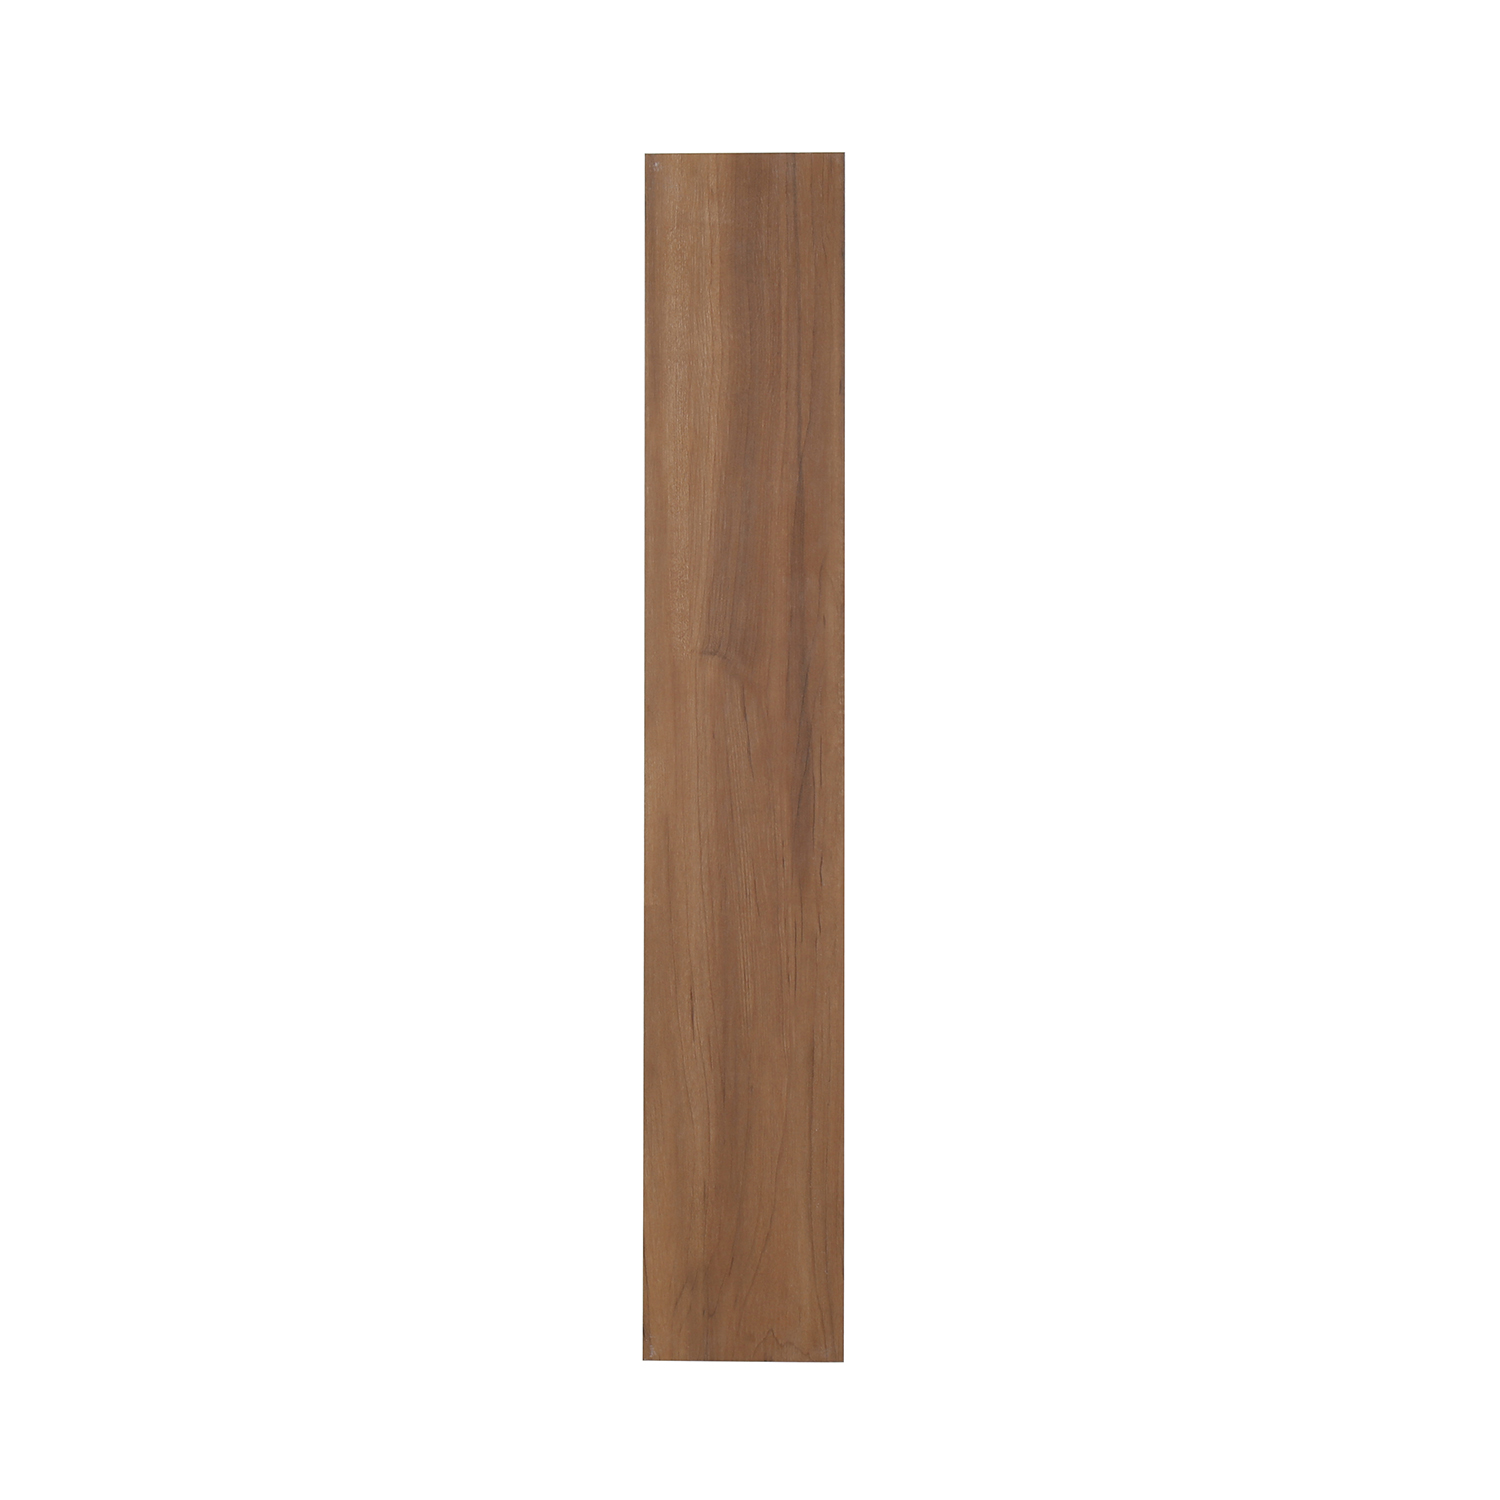 3D Inkjet Like Natural wood looks wooden floor tiles-AJ915054M-150x900